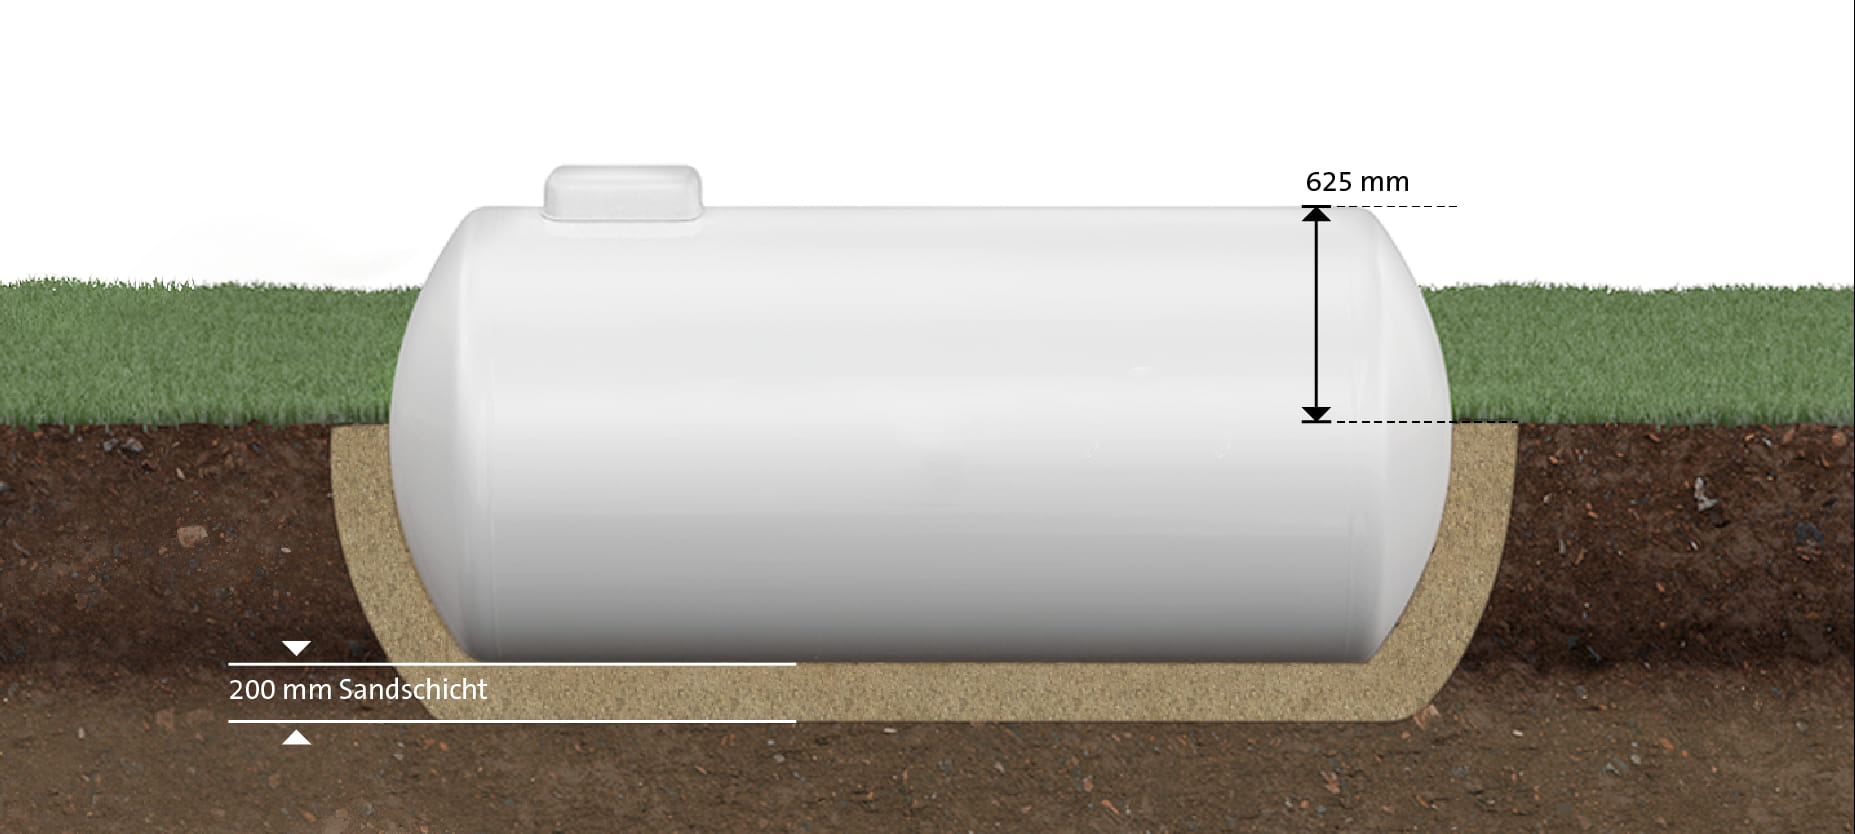 Frischwassertank / Abwassertank: Verwendung, Regeln, Leerung